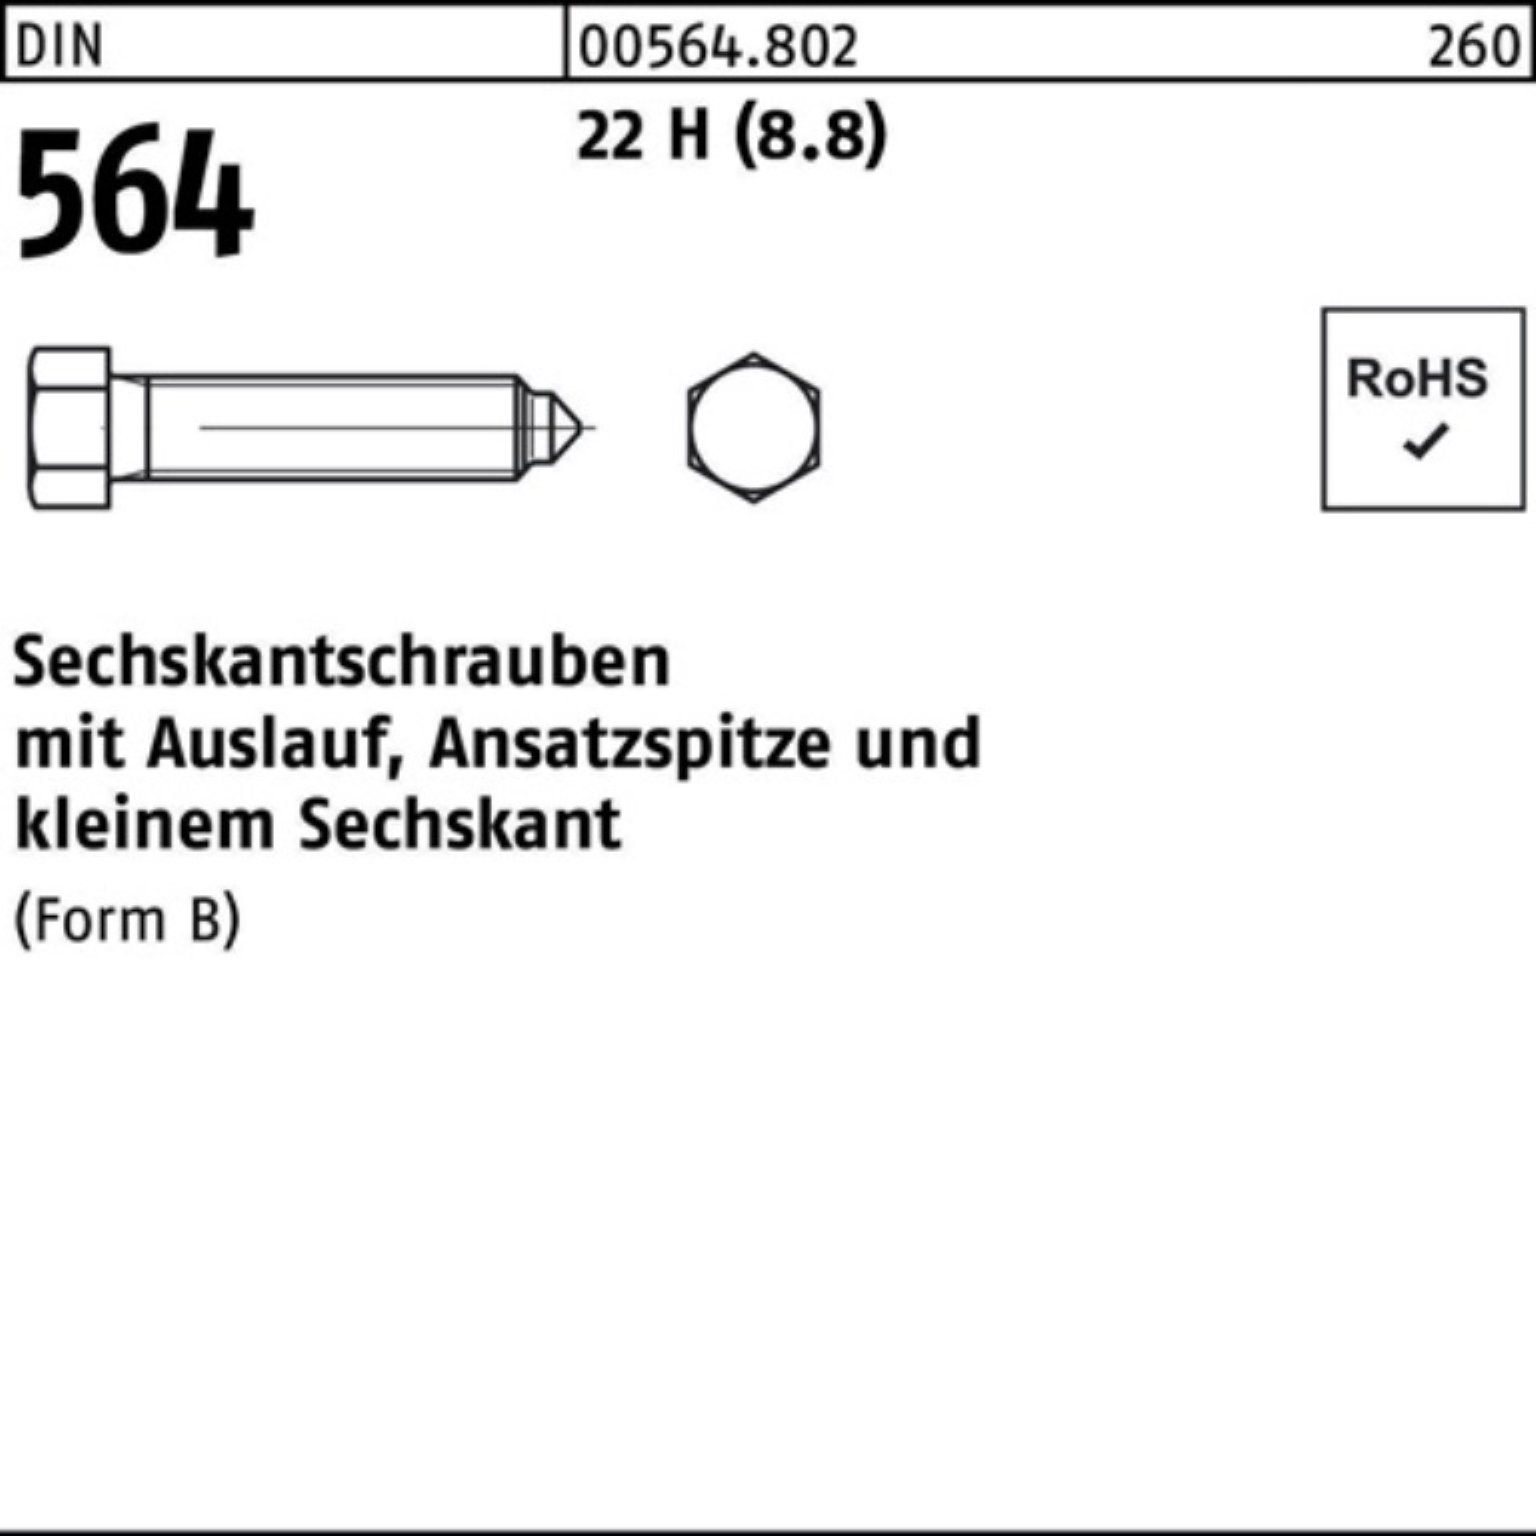 22 100er Ansatzspitze/Auslauf Sechskantschraube Sechskantschraube Reyher 16x DIN BM 40 Pack 564